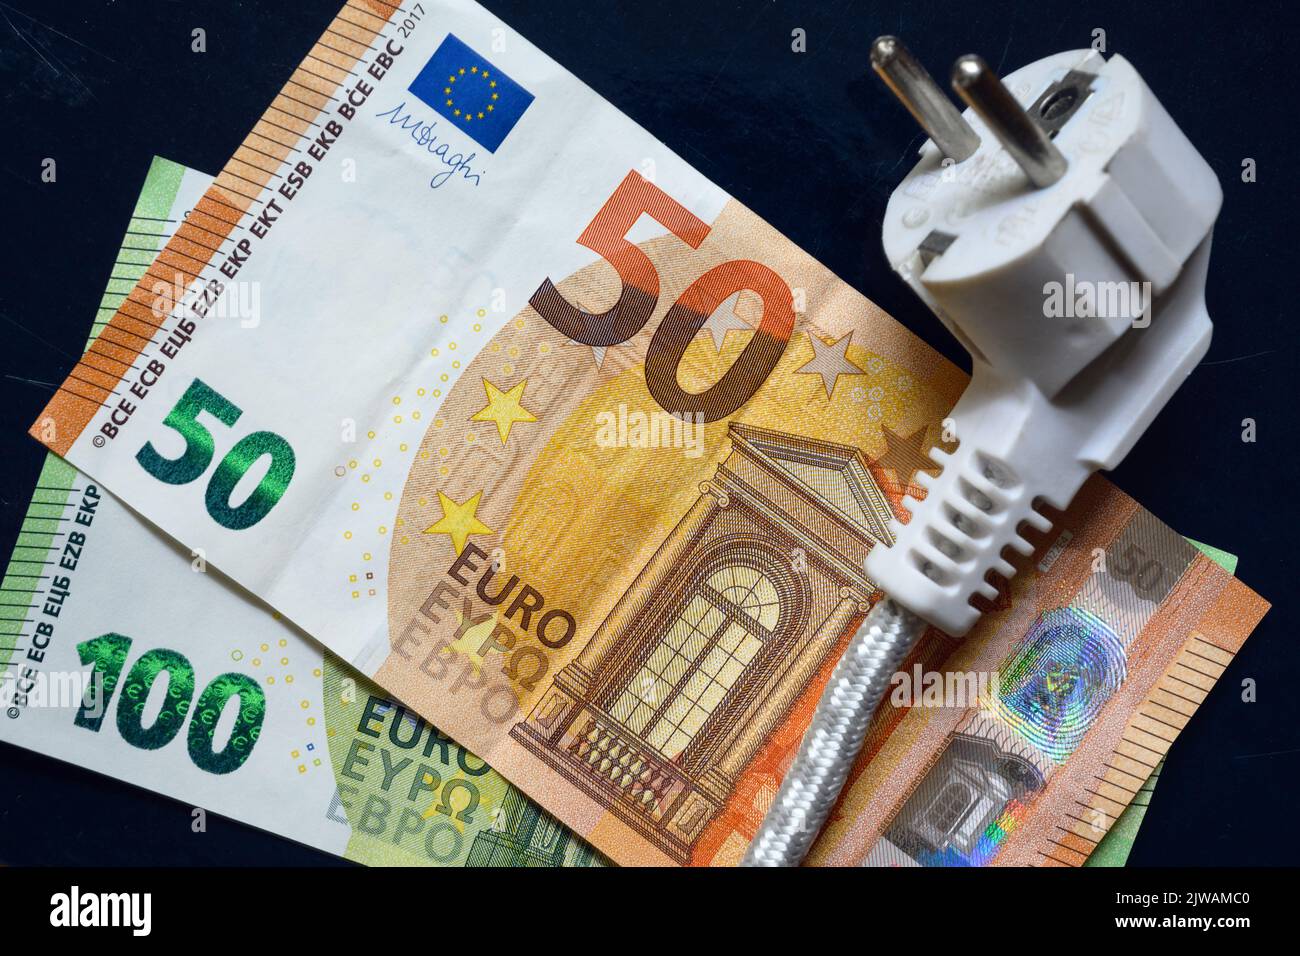 Fiche d'alimentation et euro-monnaie, câble électrique domestique sur les billets européens, vue de dessus. Crise énergétique en Europe, prix coûteux de l'électricité domestique. Concept Banque D'Images